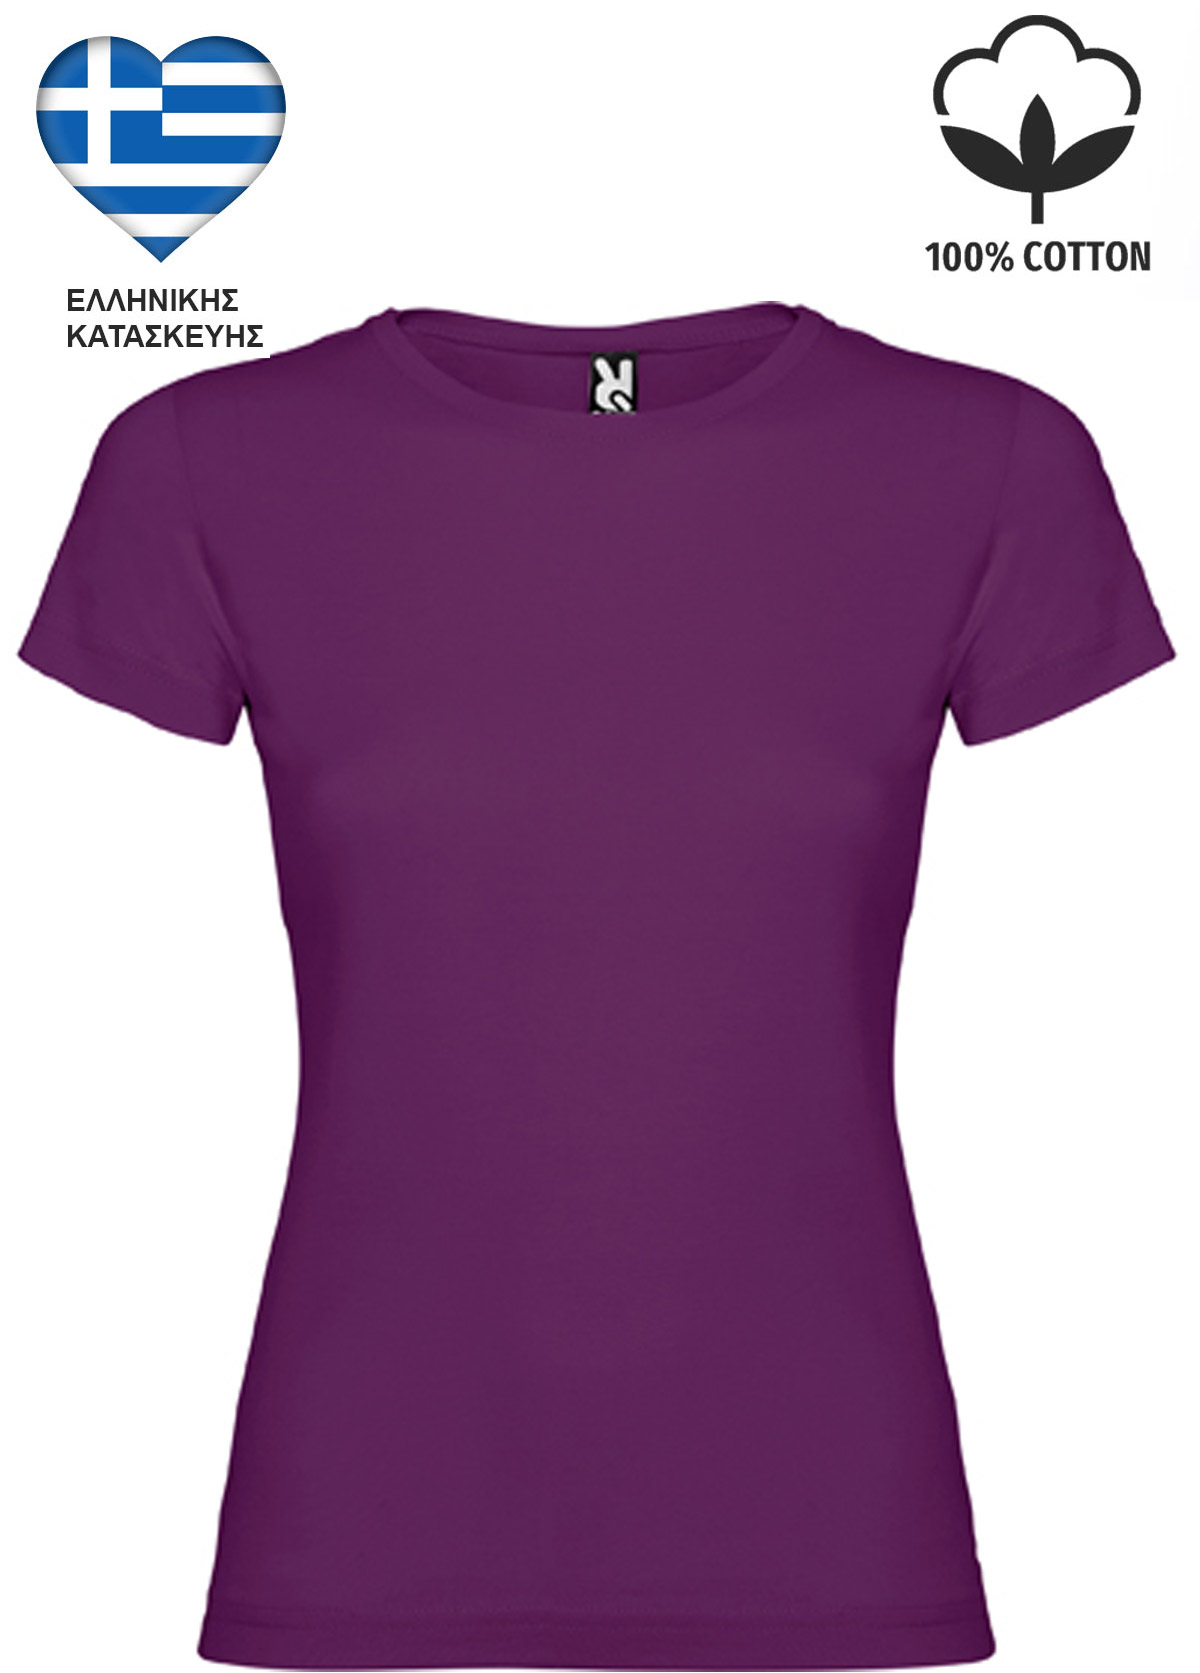 Μωβ Σκούρο Γυναικείο Βαμβακερό T-Shirt Ελληνικής Κατασκευής 6627